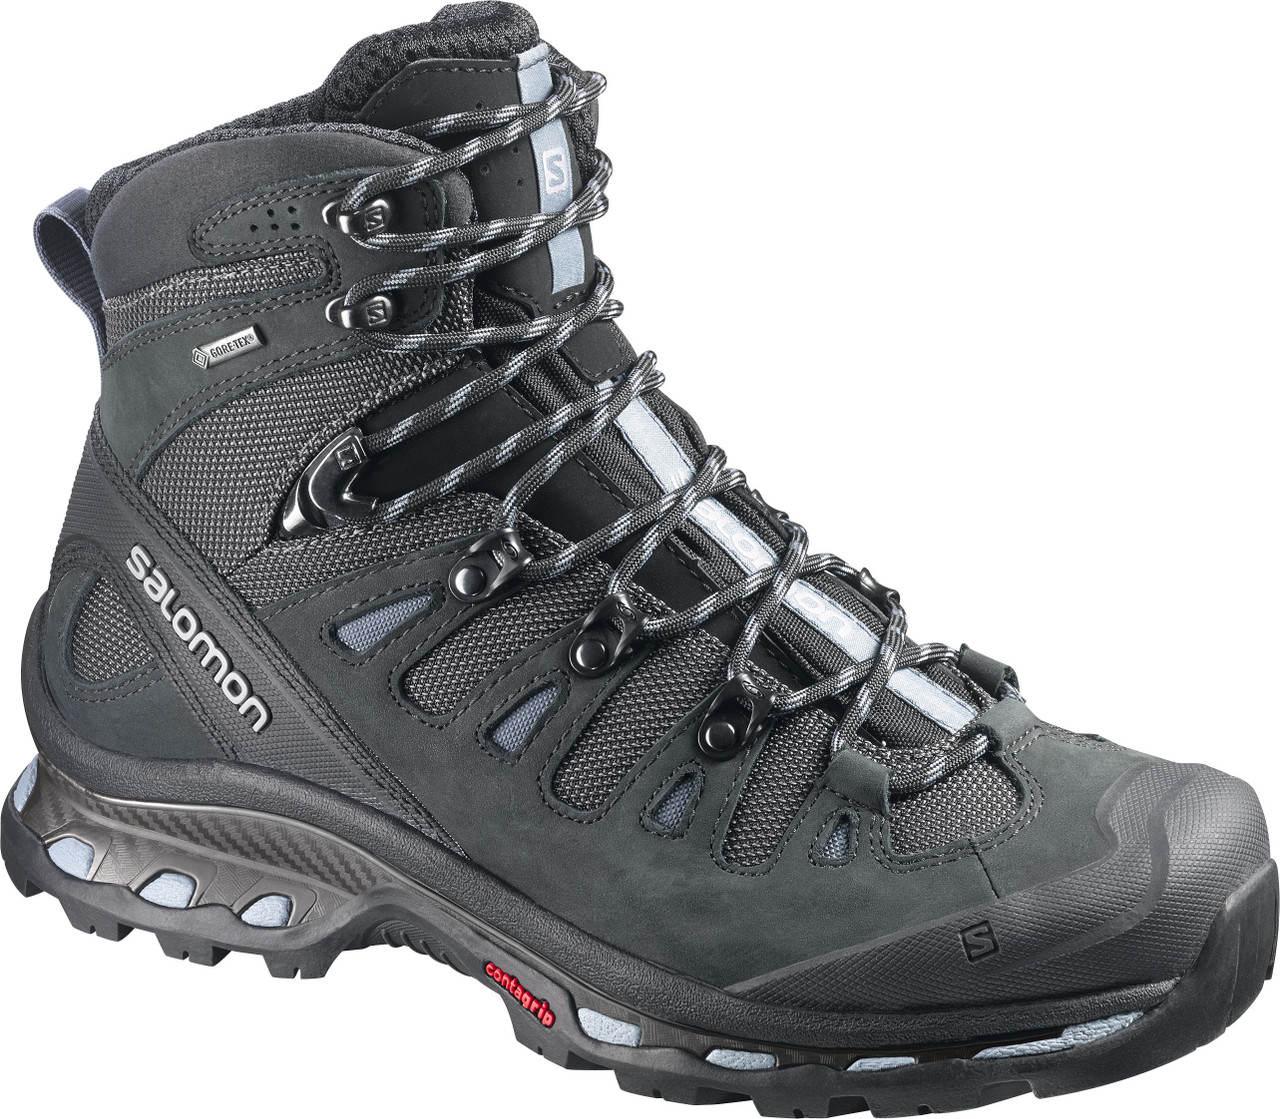 Salomon Quest 4D 2 Gore-Tex Hiking Boots - Women's | MEC